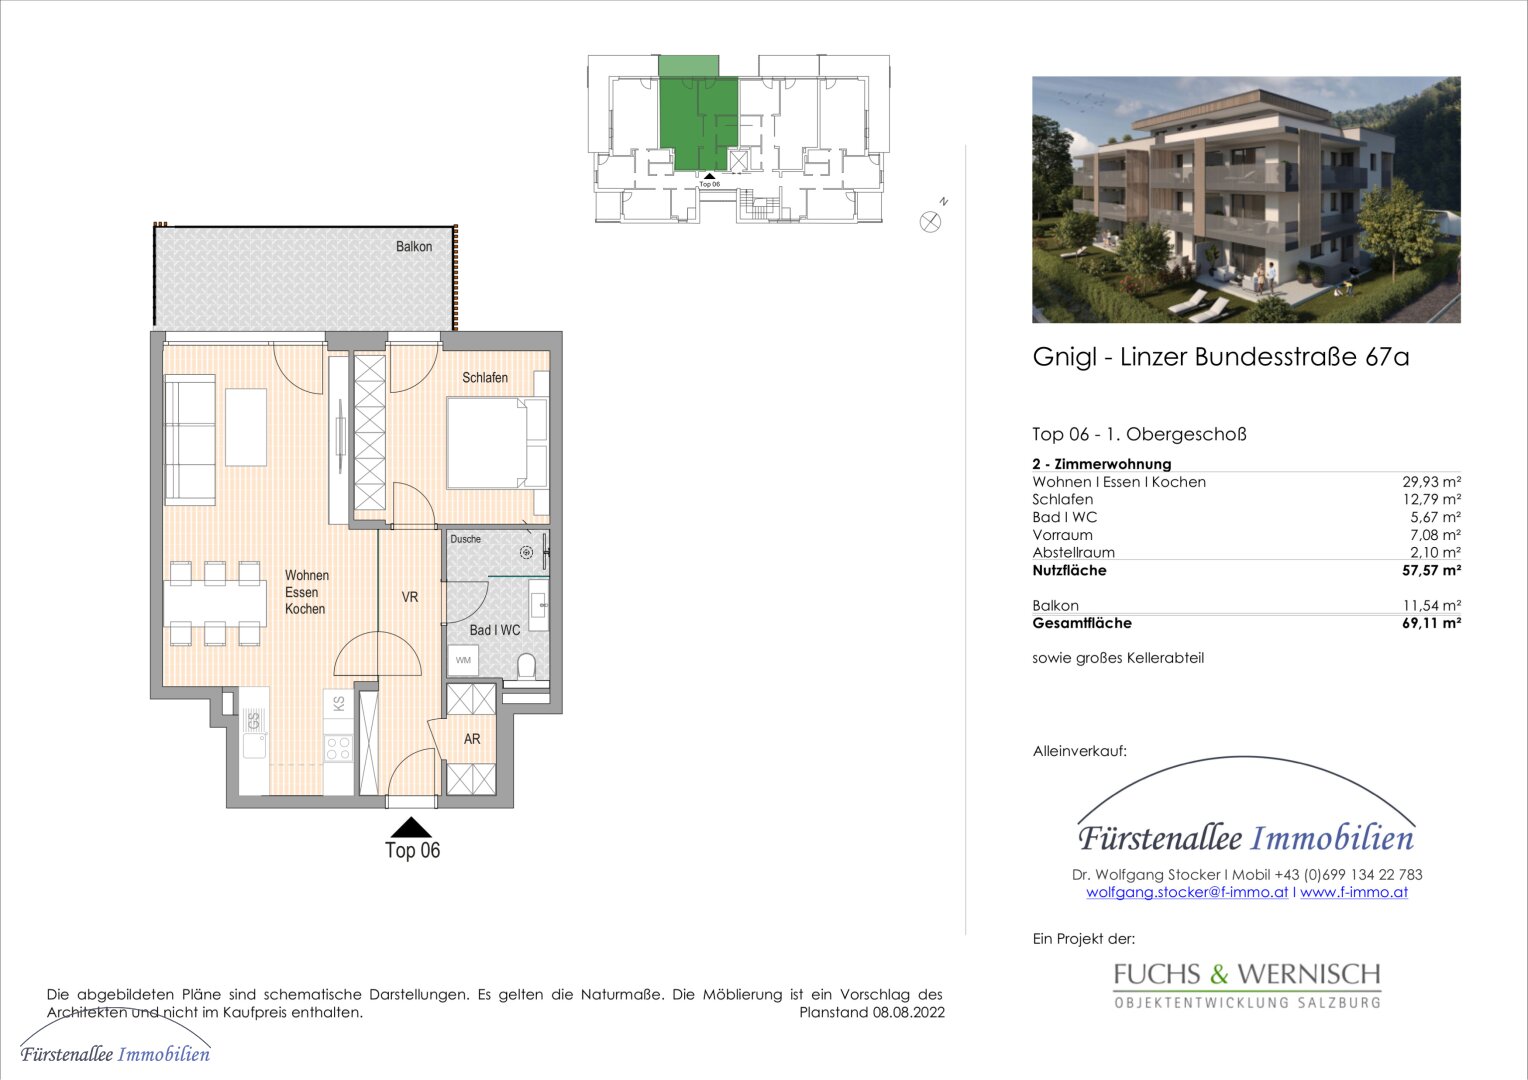 KAUF SALZBURG-STADT: NEUBAU/ERSTBEZUG - LINZER BUNDESSTRASSE 67: 58 m² 2-Zimmer-Wohnung - mit 12 m² Balkon - Top W 6 - bezugsfertig binnen 4-6 Wochen